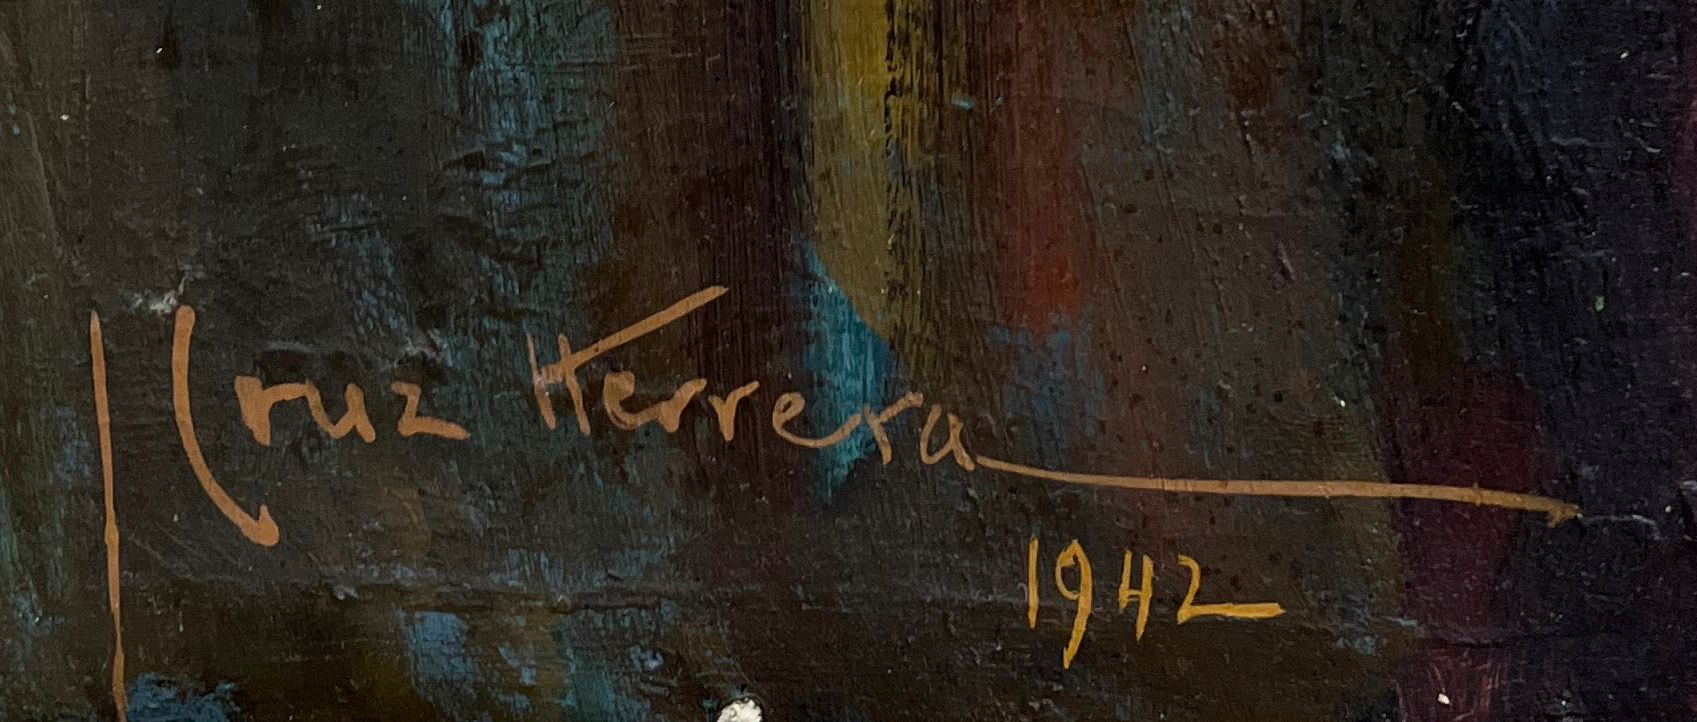 Signature de Cruz Herrera